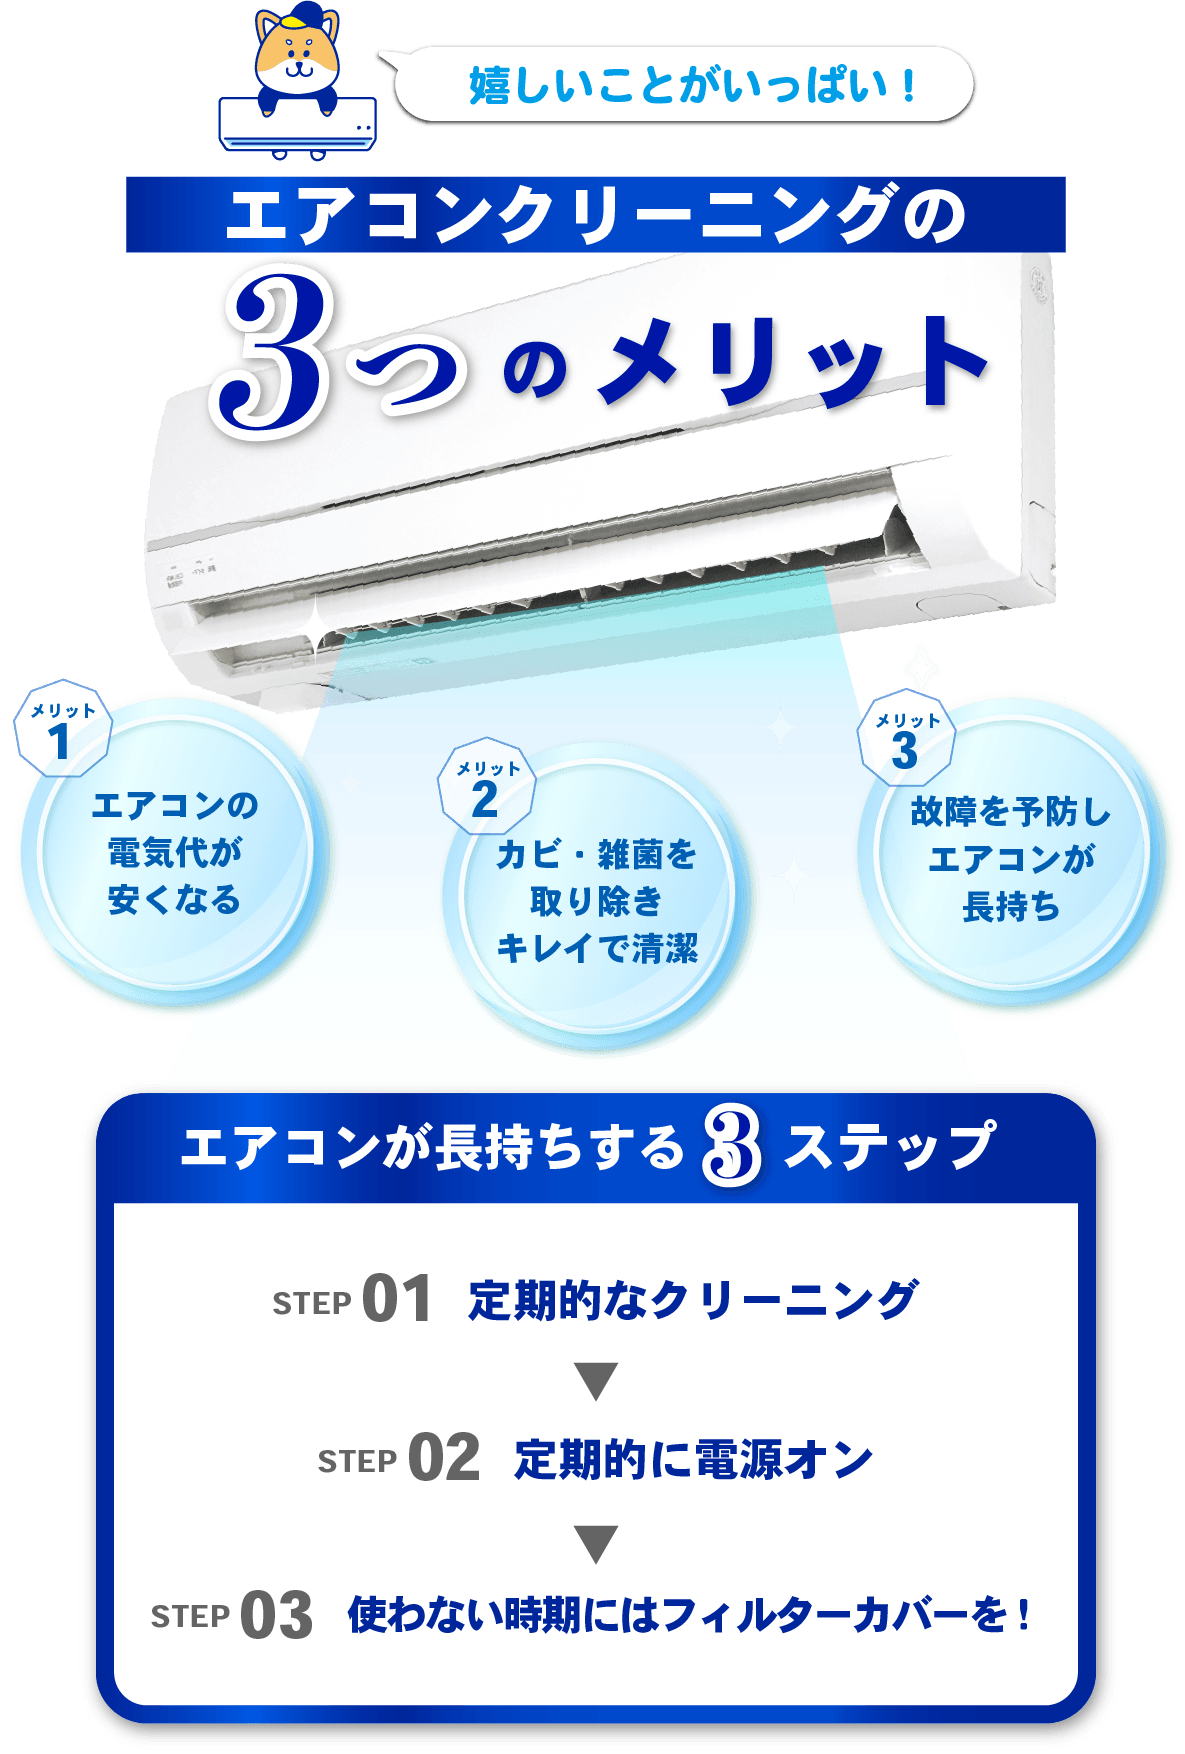 エアコンクリーニングの３つのメリット　１.エアコンの電気代が安くなる　２.カビ・雑菌を取り除きキレイで清潔　３.故障を予防しエアコンが長持ち